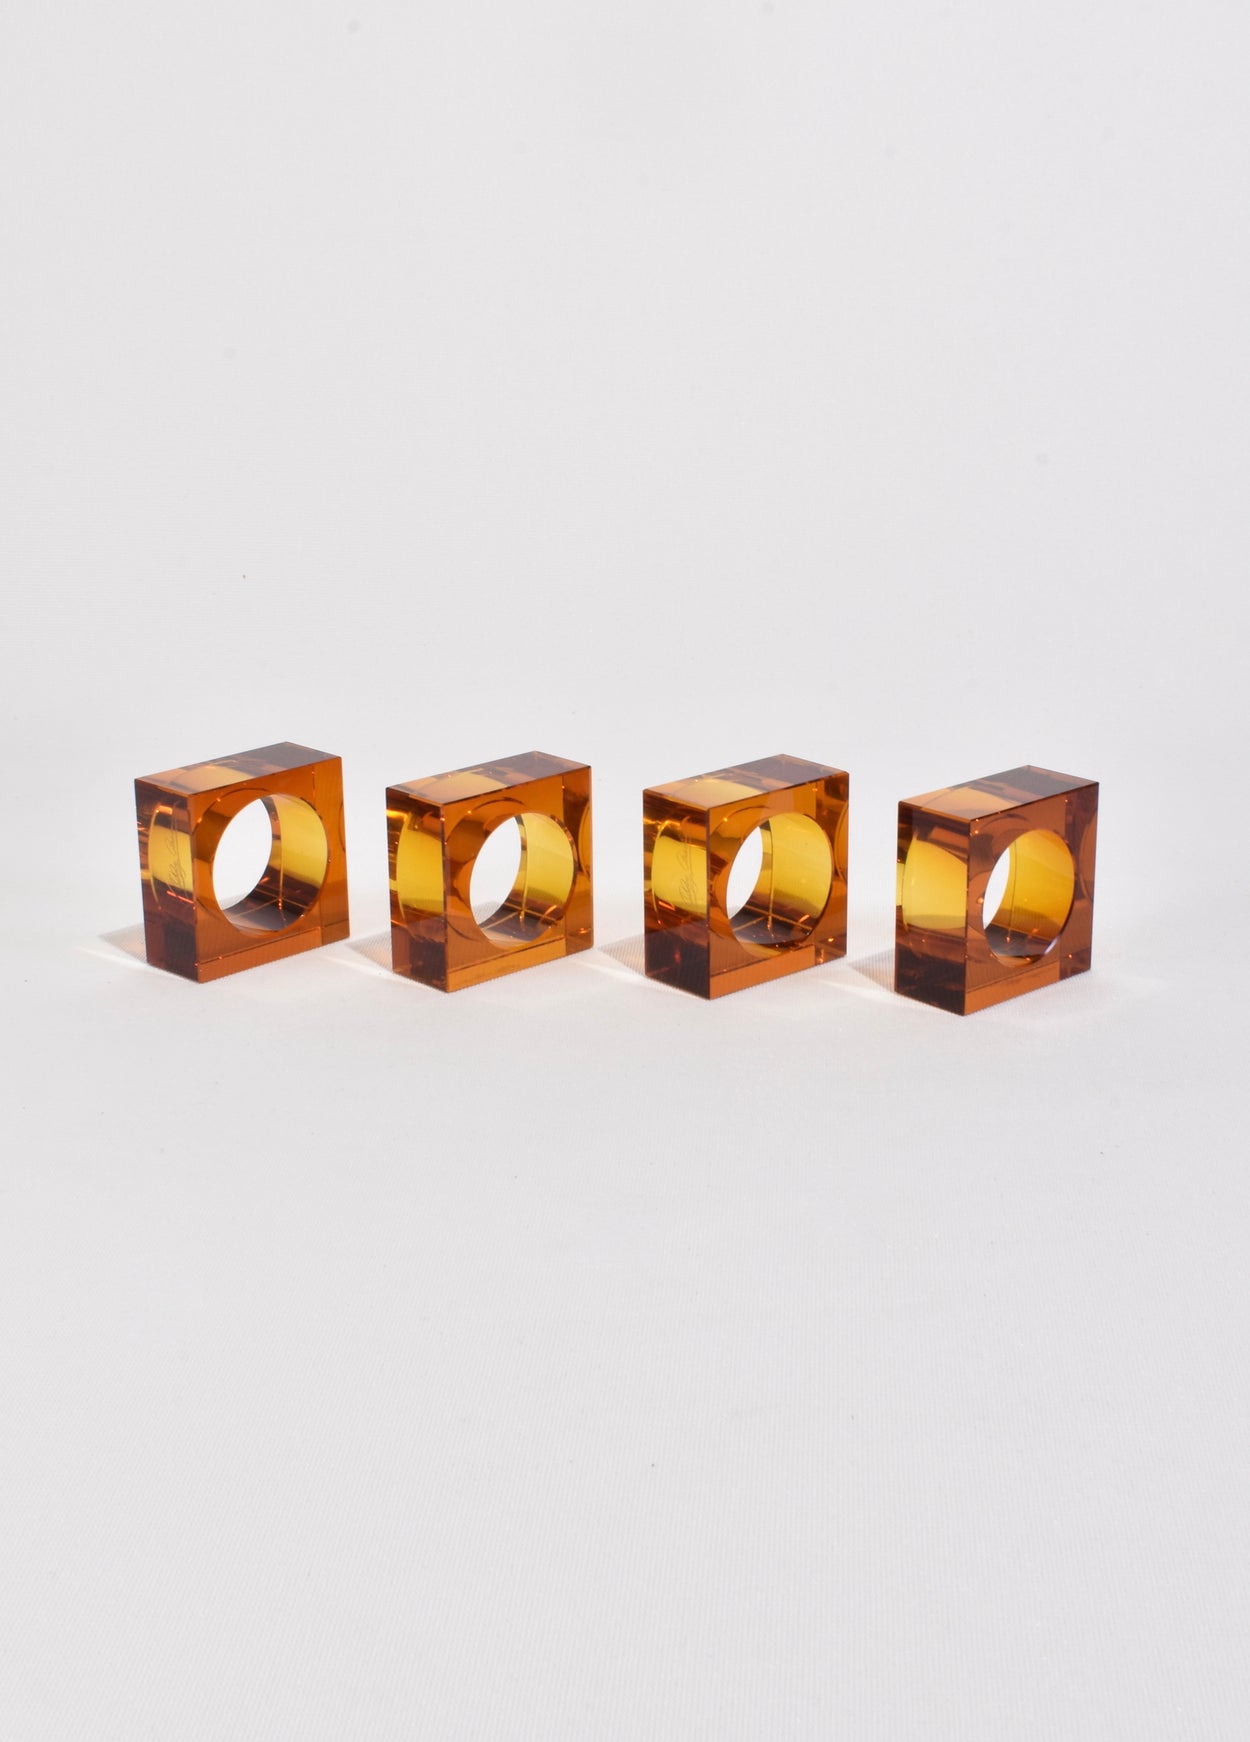 Amber Glass Napkin Rings